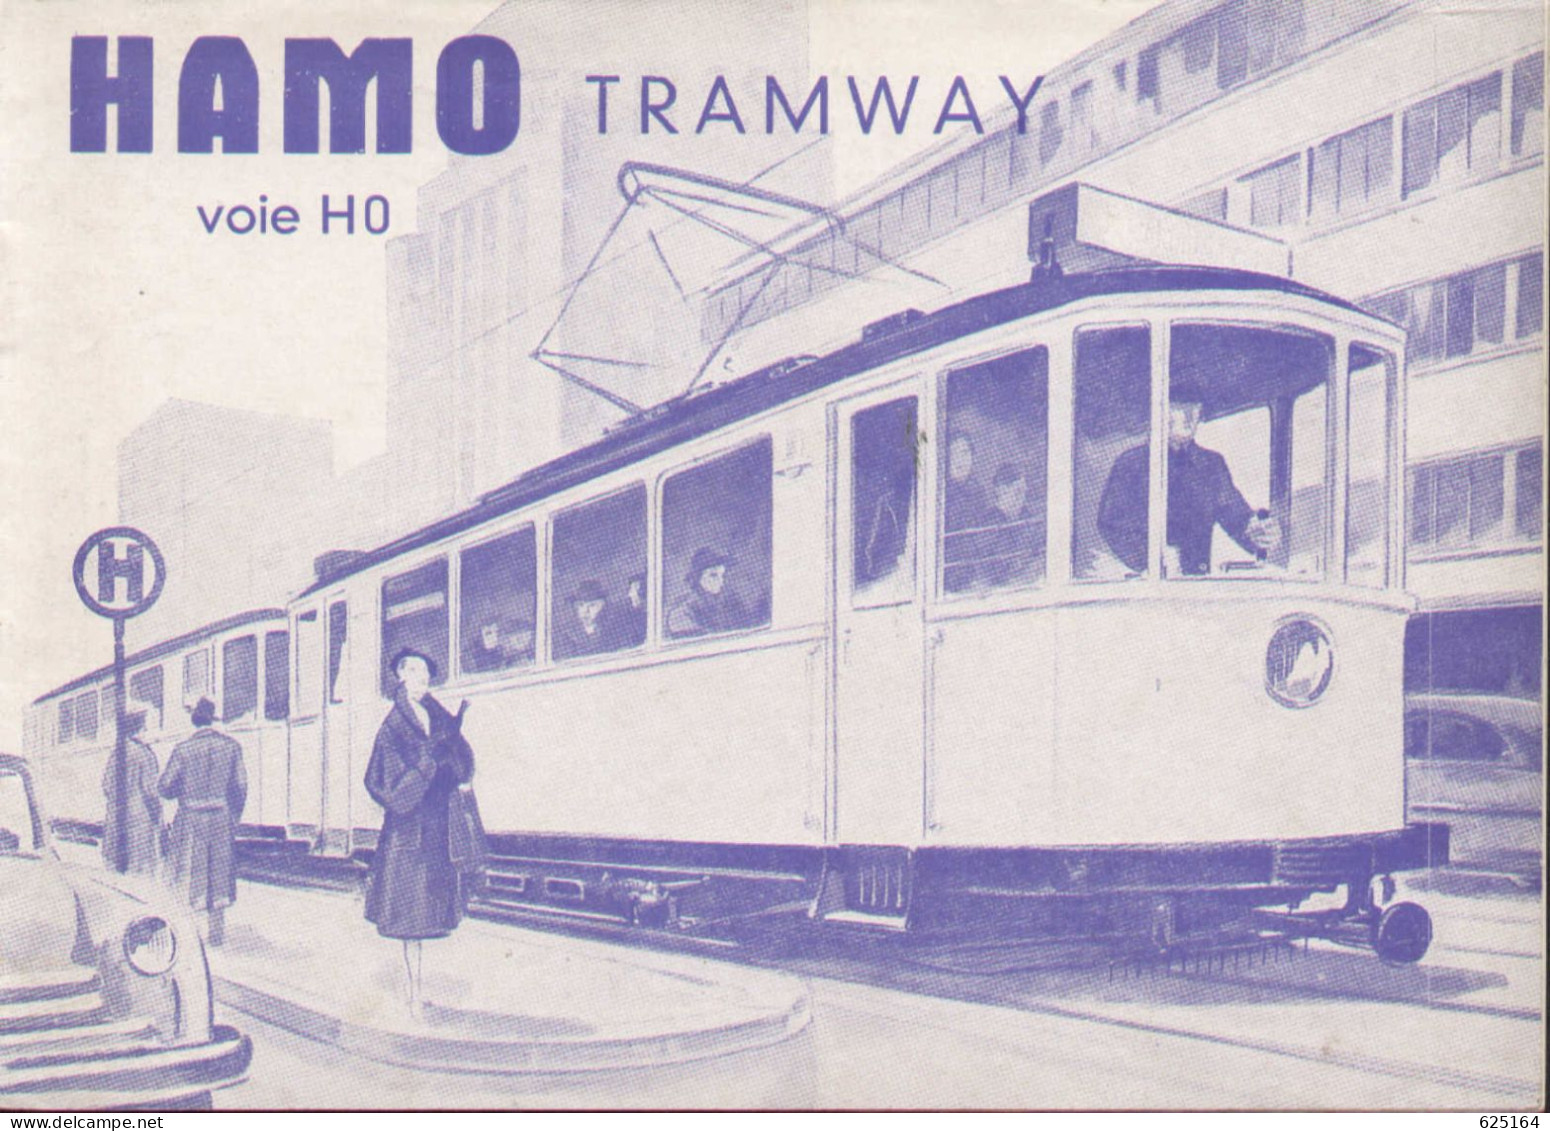 Catalogue HAMO TRAMWAY 1954 Voie HO 1:87 Französische Ausgabe - Francés